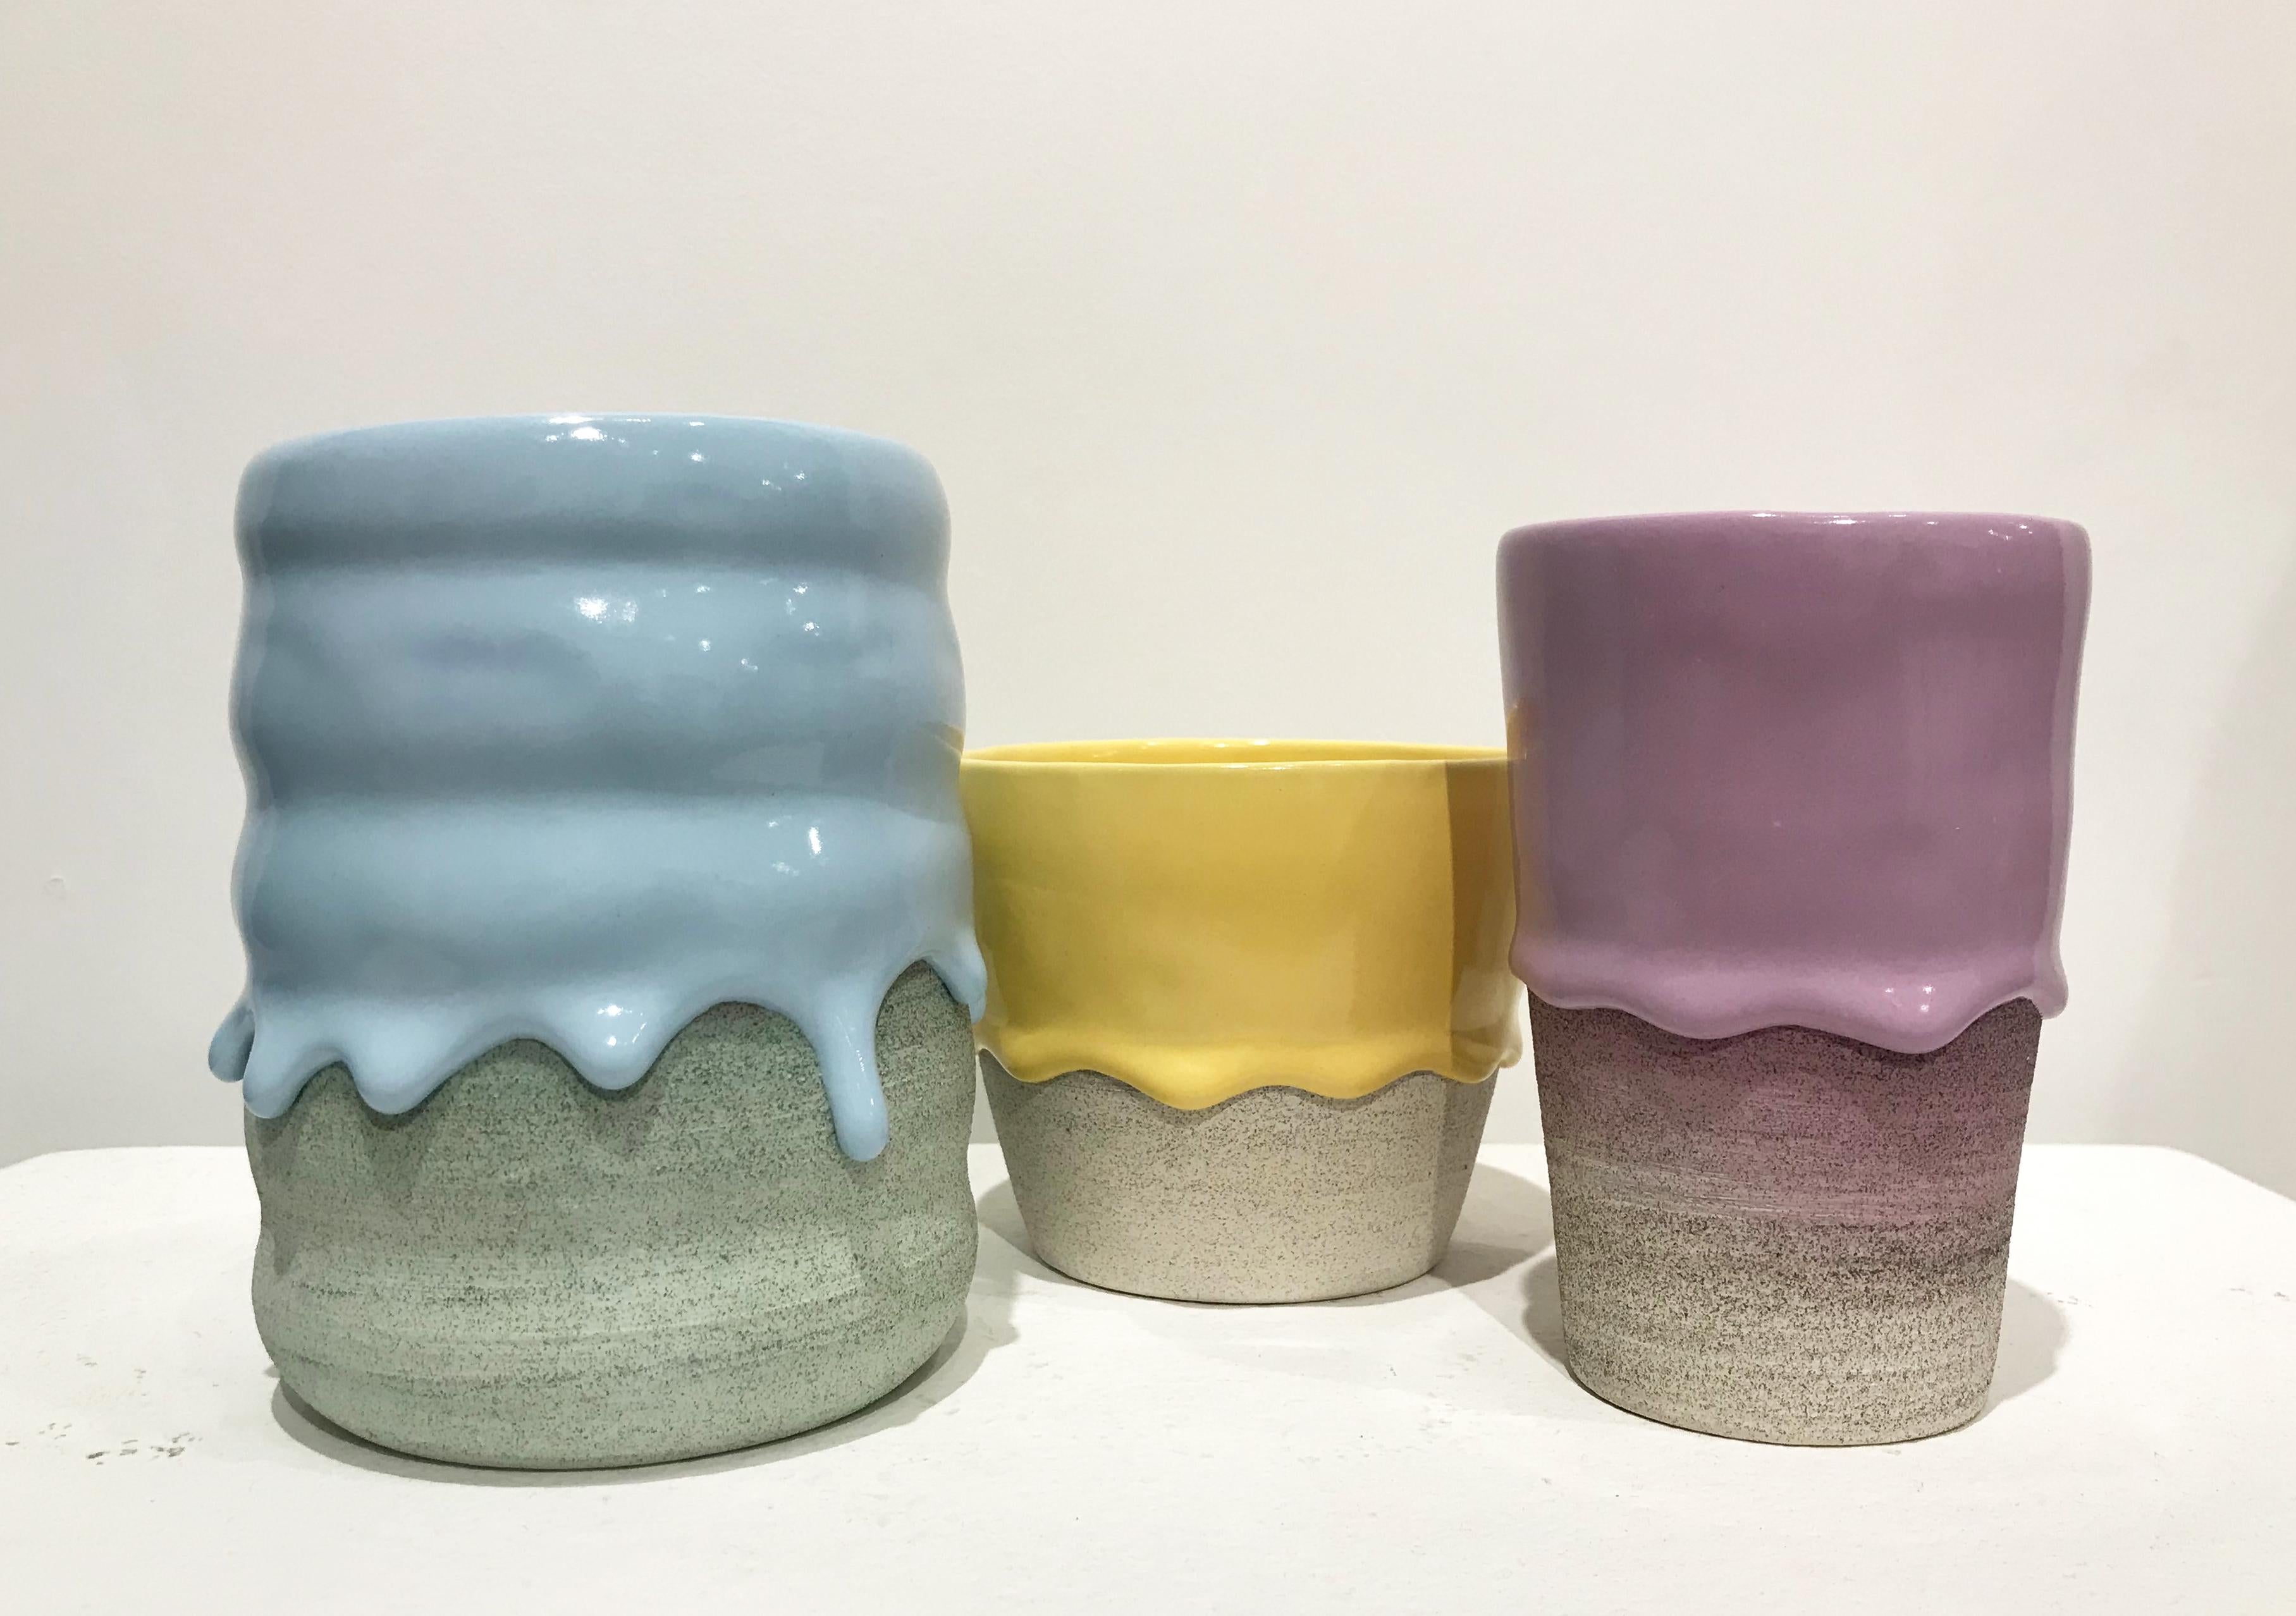 Set of Three Ceramic Vessels, Contemporary Design, Colorful Glazed Stoneware – Sculpture von Brian Giniewski